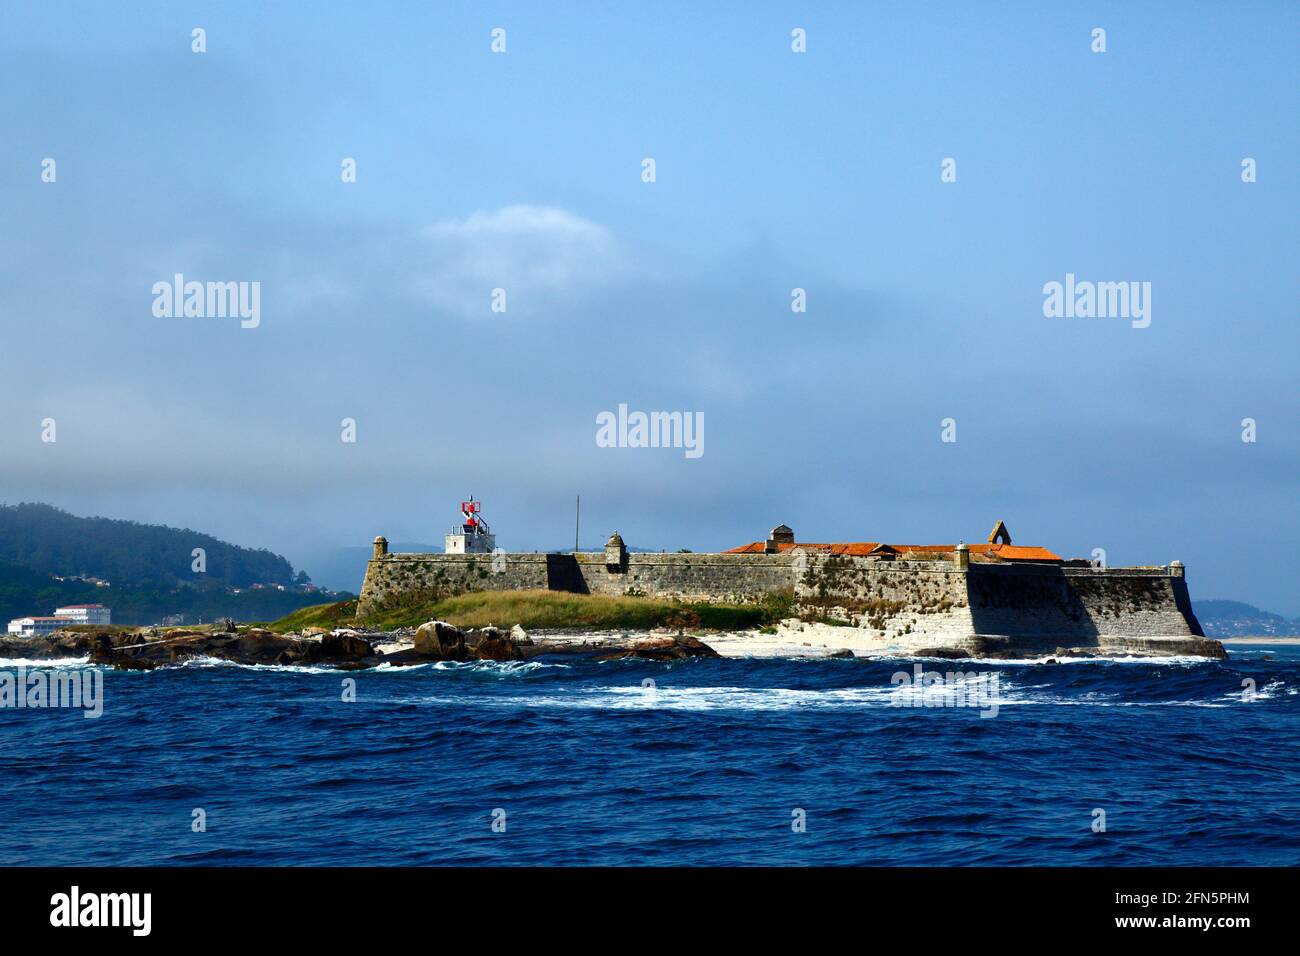 Forte da Insua castle on small island off Praia de Moledo, near Caminha, Minho Province, northern Portugal Stock Photo